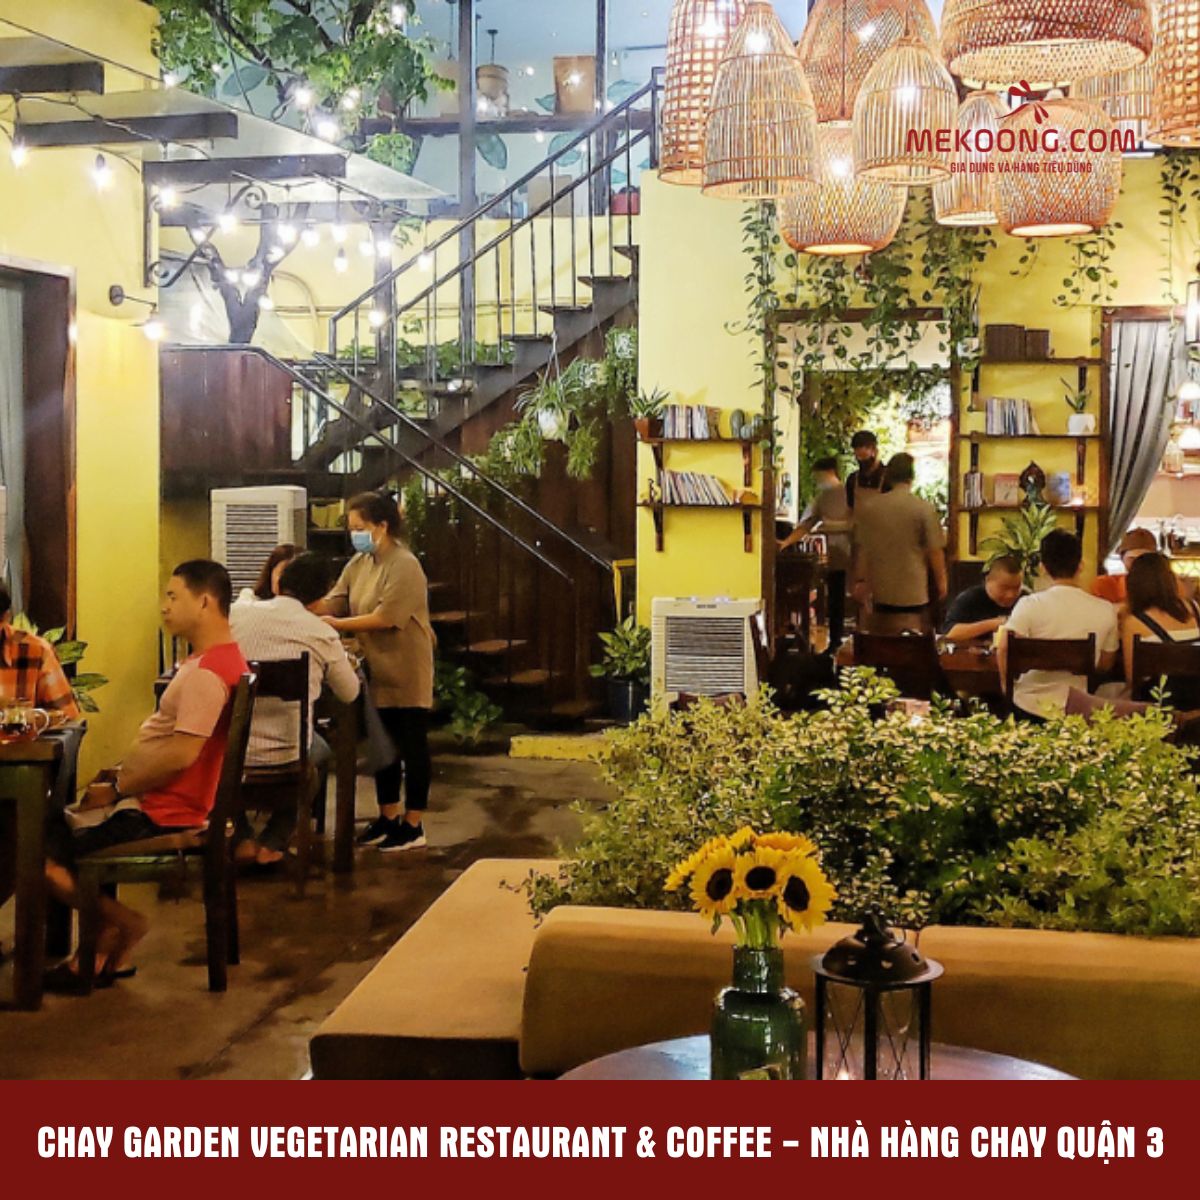 Chay Garden Vegetarian Restaurant & Coffee - Nhà hàng chay quận 3